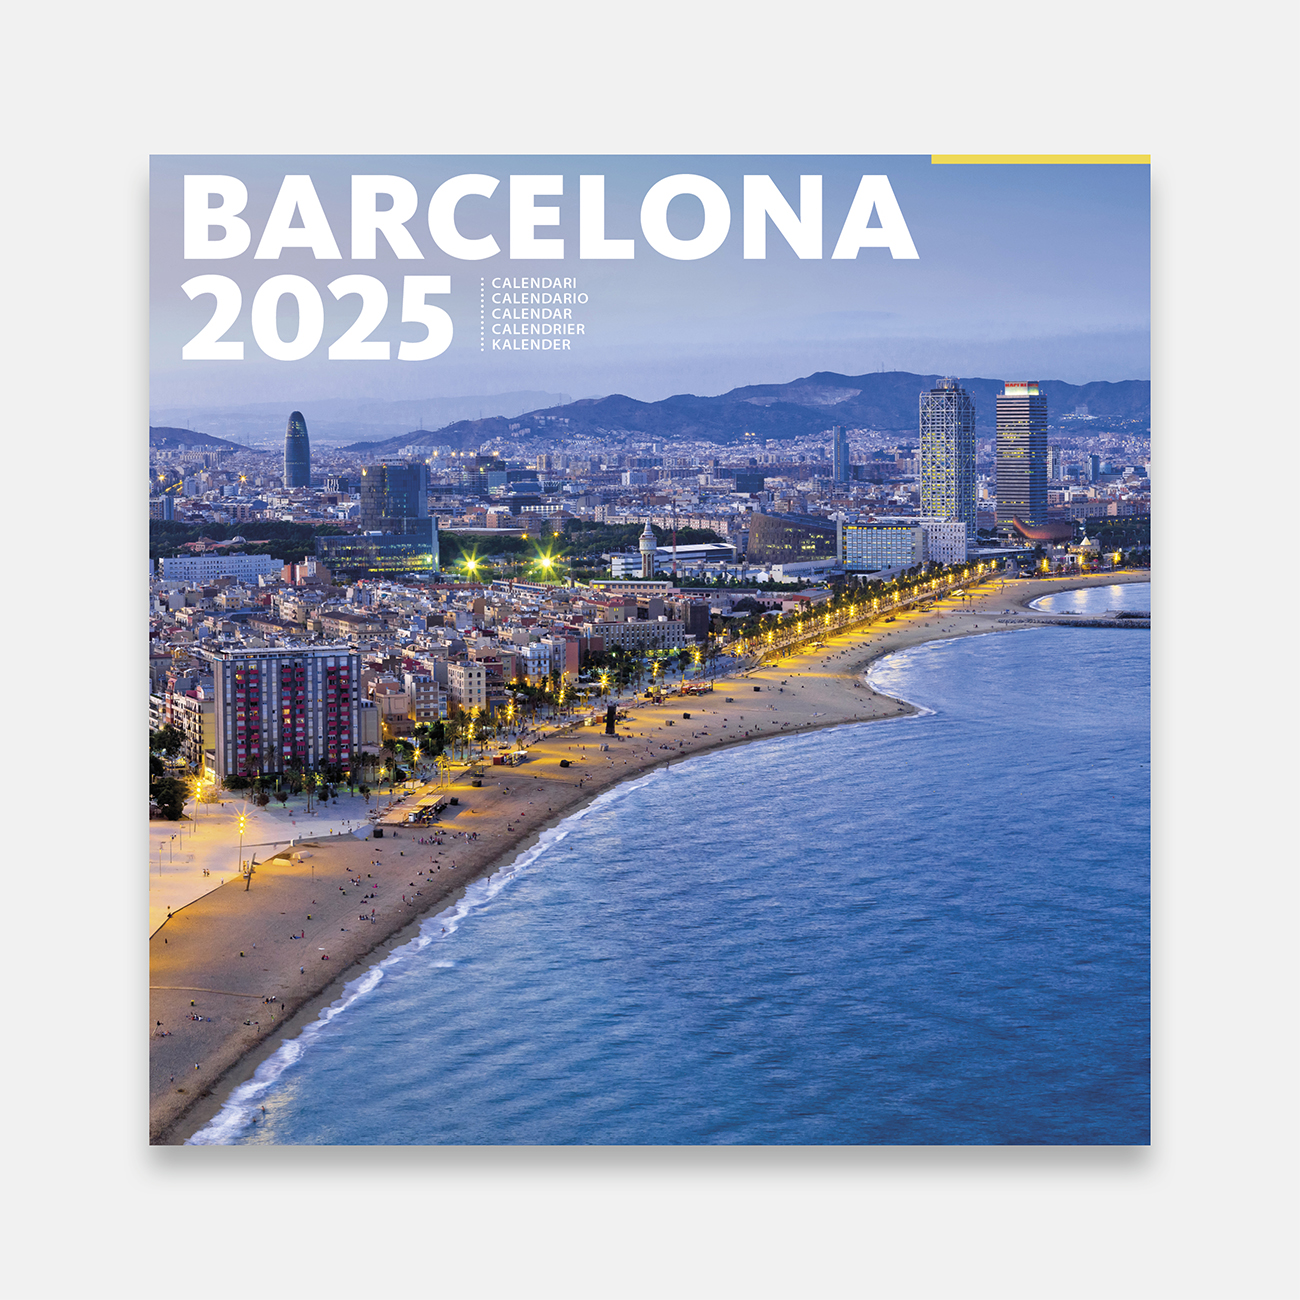 Calendar 2025 Barcelona 25b1 calendario pared 2025 barcelona